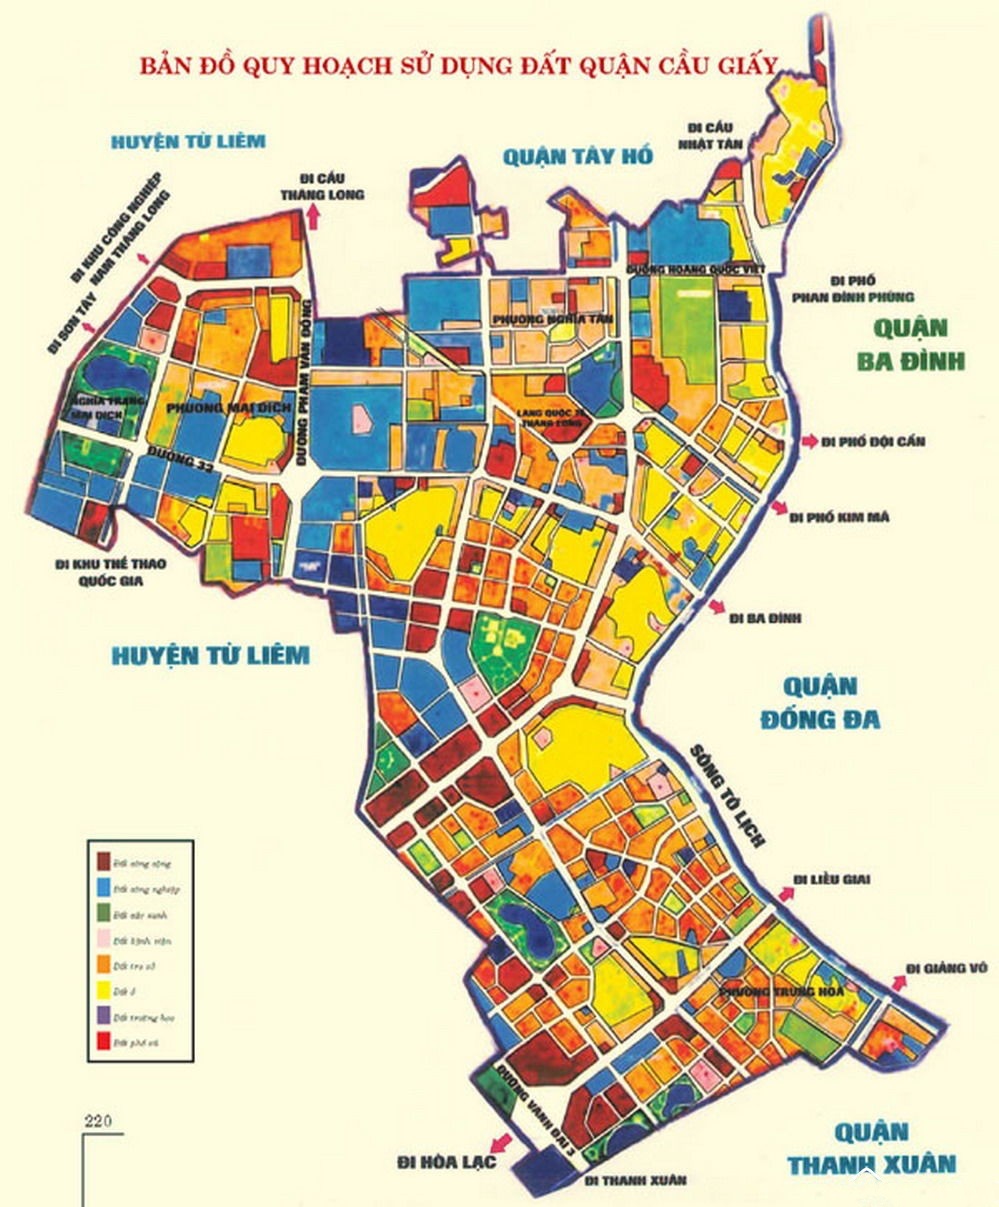 Bản đồ quy hoạch sử dụng đất quận Cầu Giấy